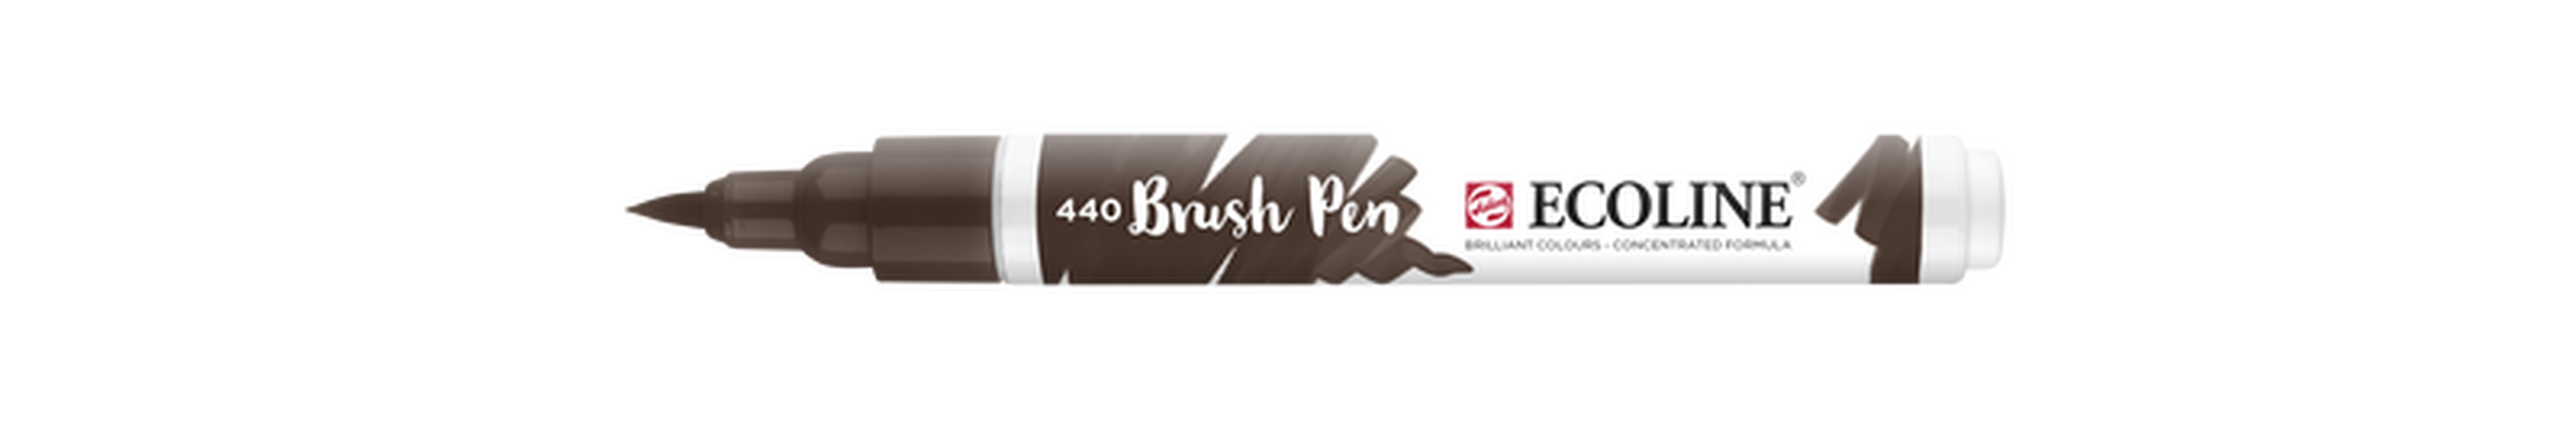 Talens Brush Pen Ecoline Number 440 Color Dark Sepia